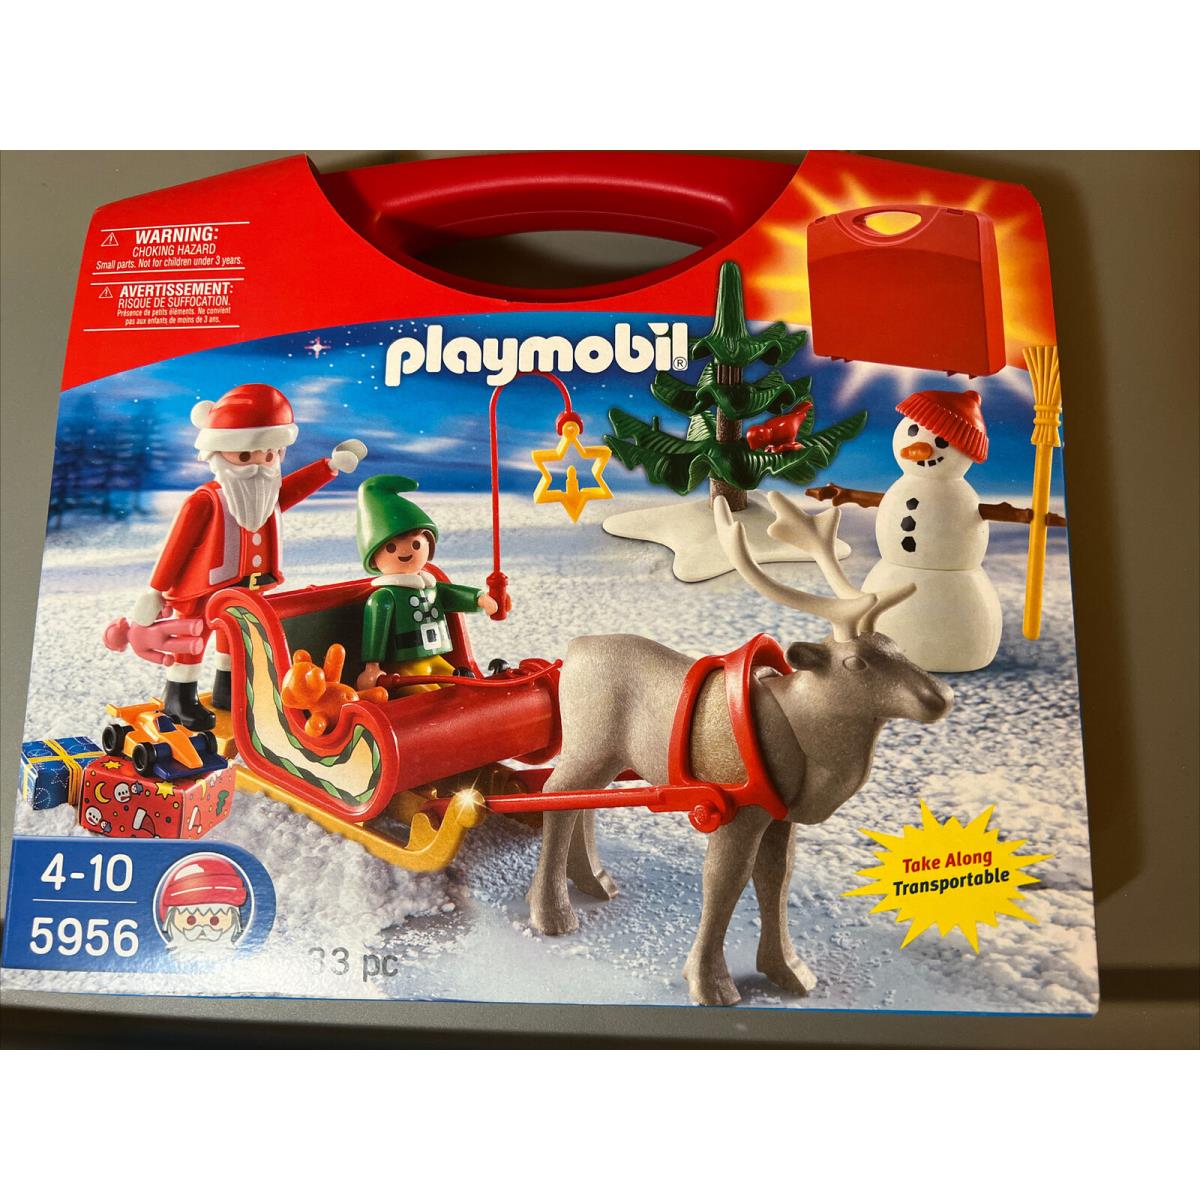 Playmobil 33 Piece Christmas Set W/red Storage Case -new